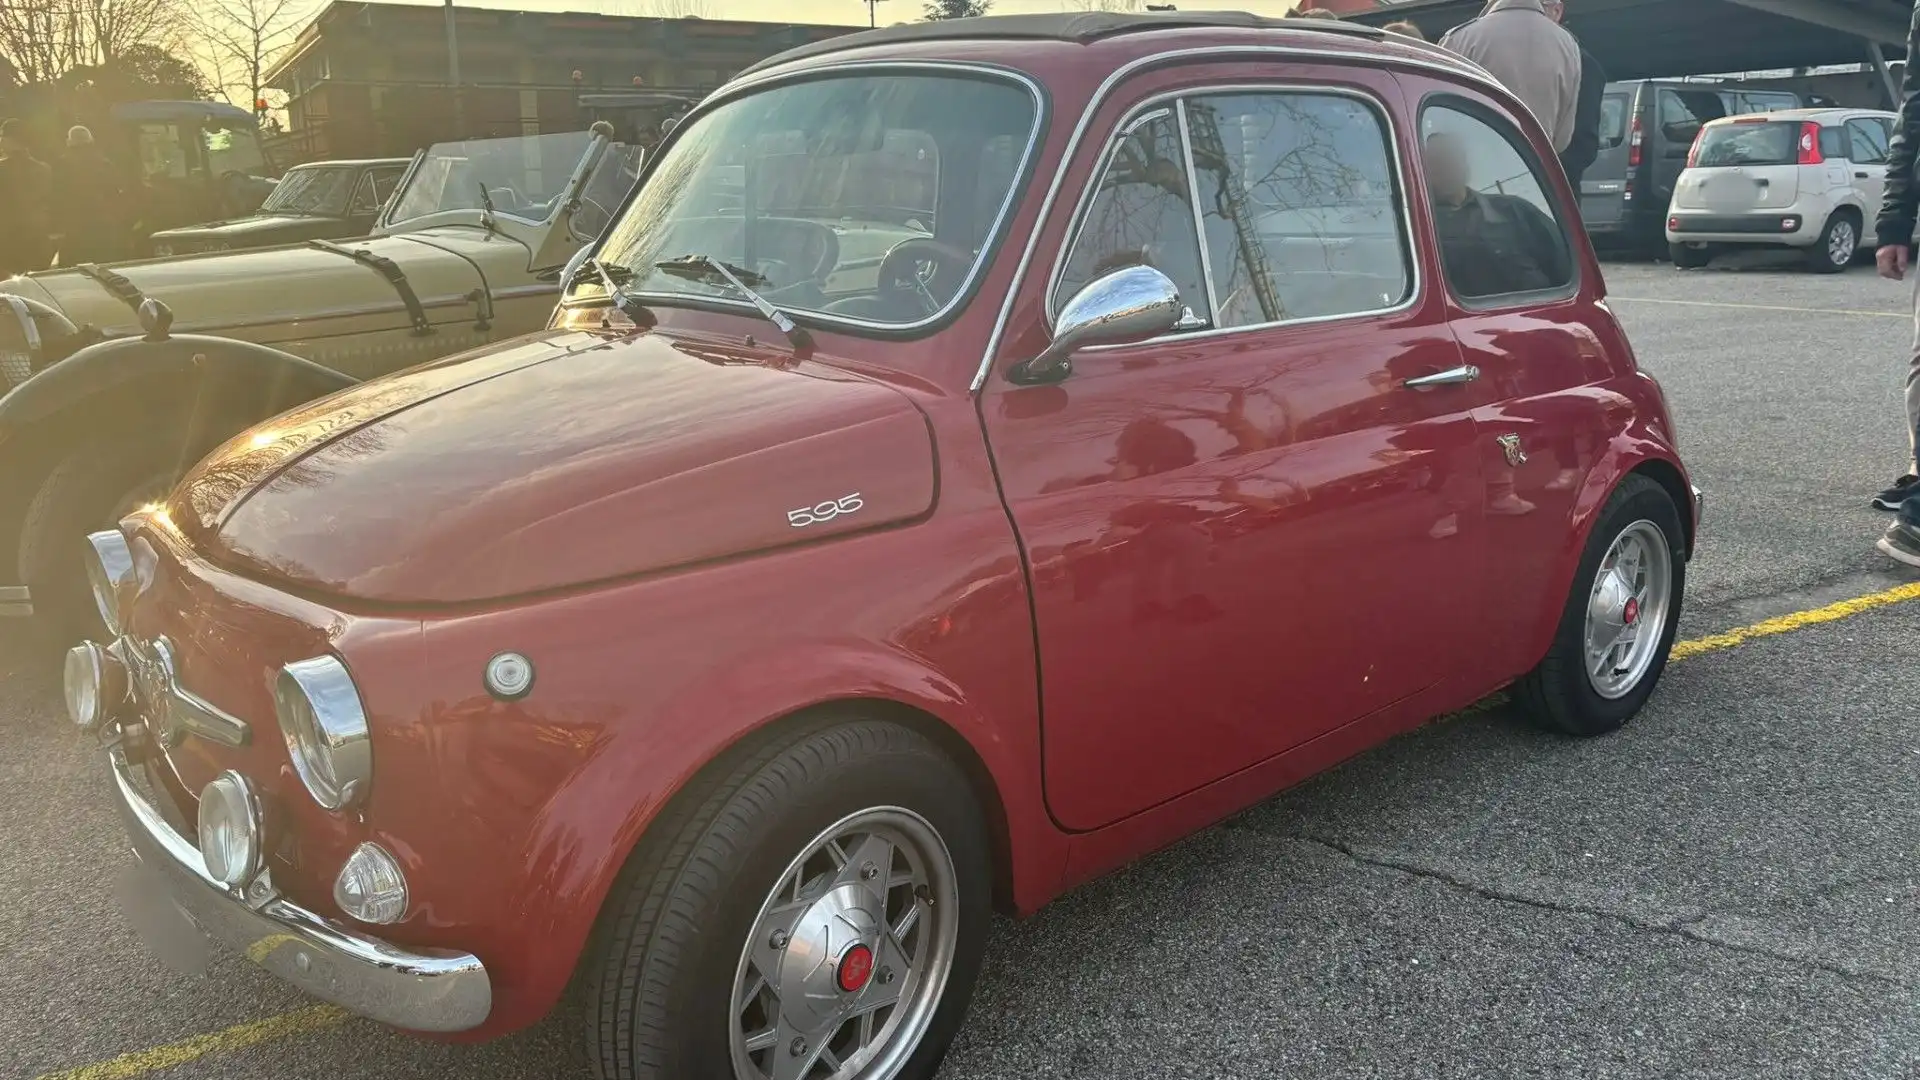 Questo modello è stato introdotto nello stesso anno in cui la Fiat presentò la Nuova 500